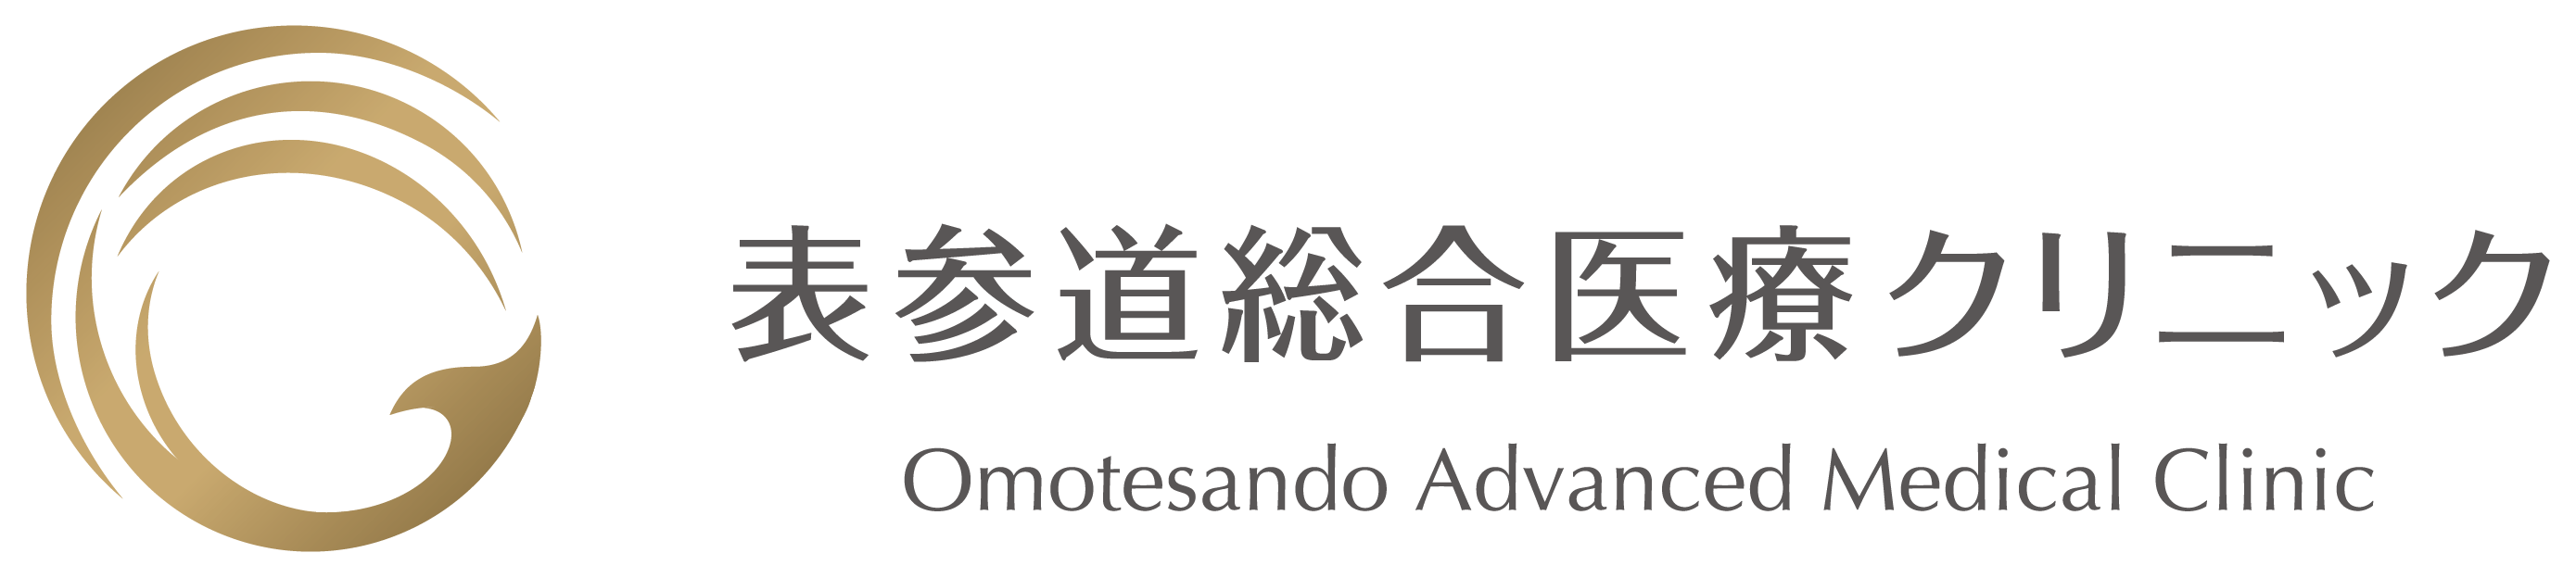 logo_omotesandou